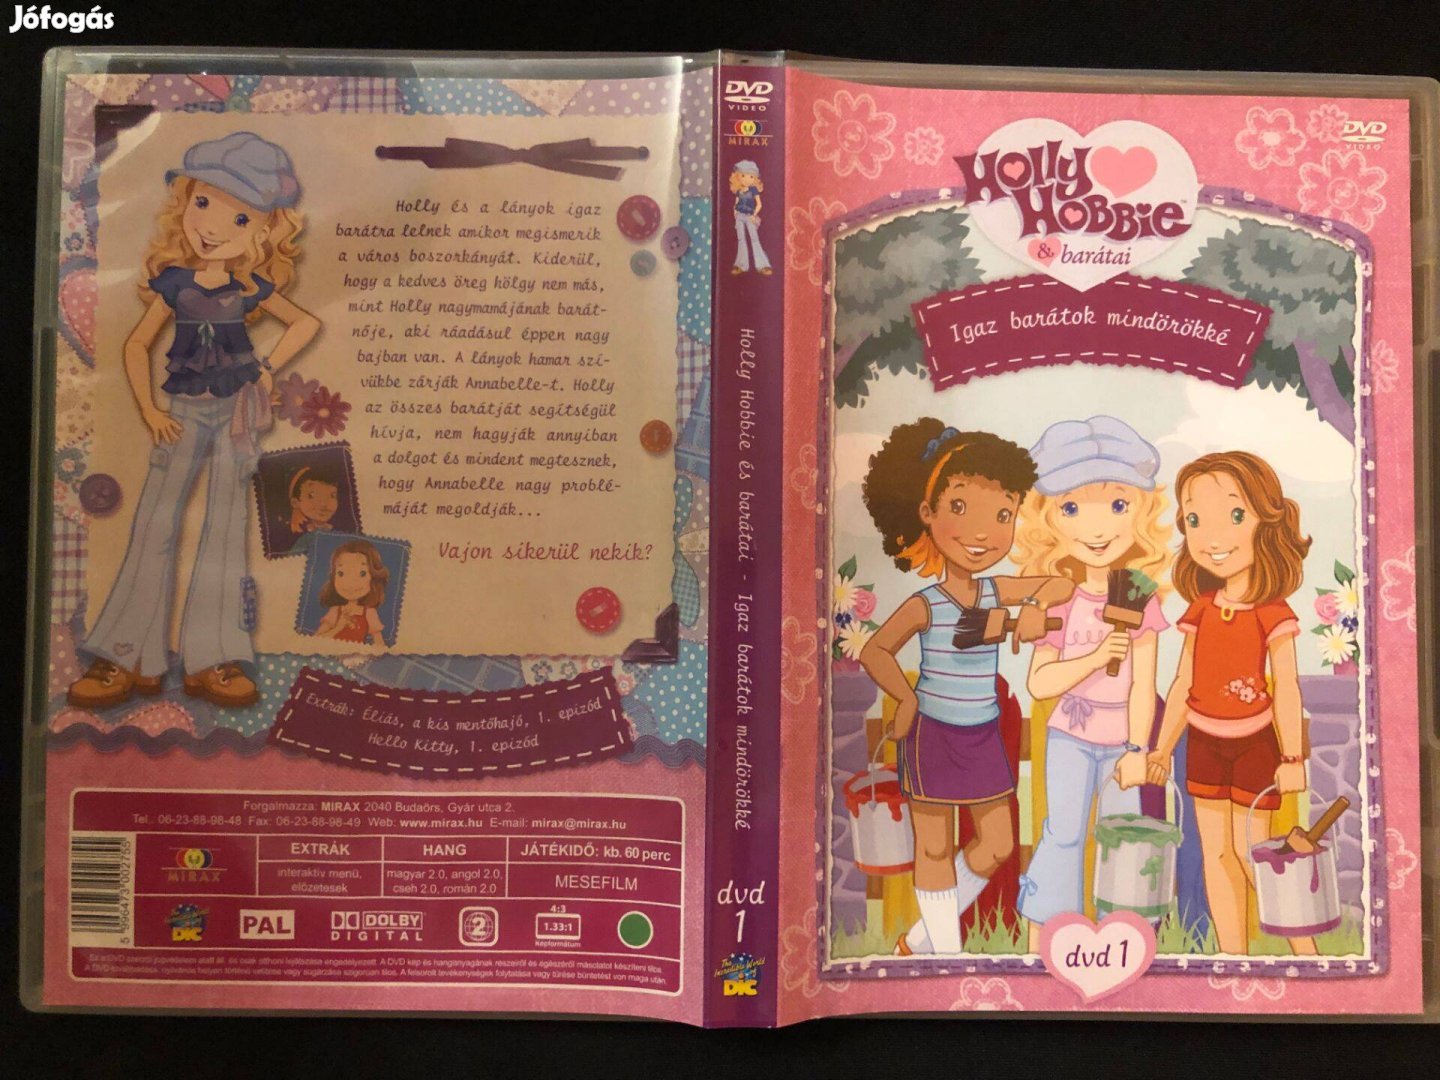 Holly Hobbie és barátai - Igaz barátok mindörökké DVD (karcmentes)